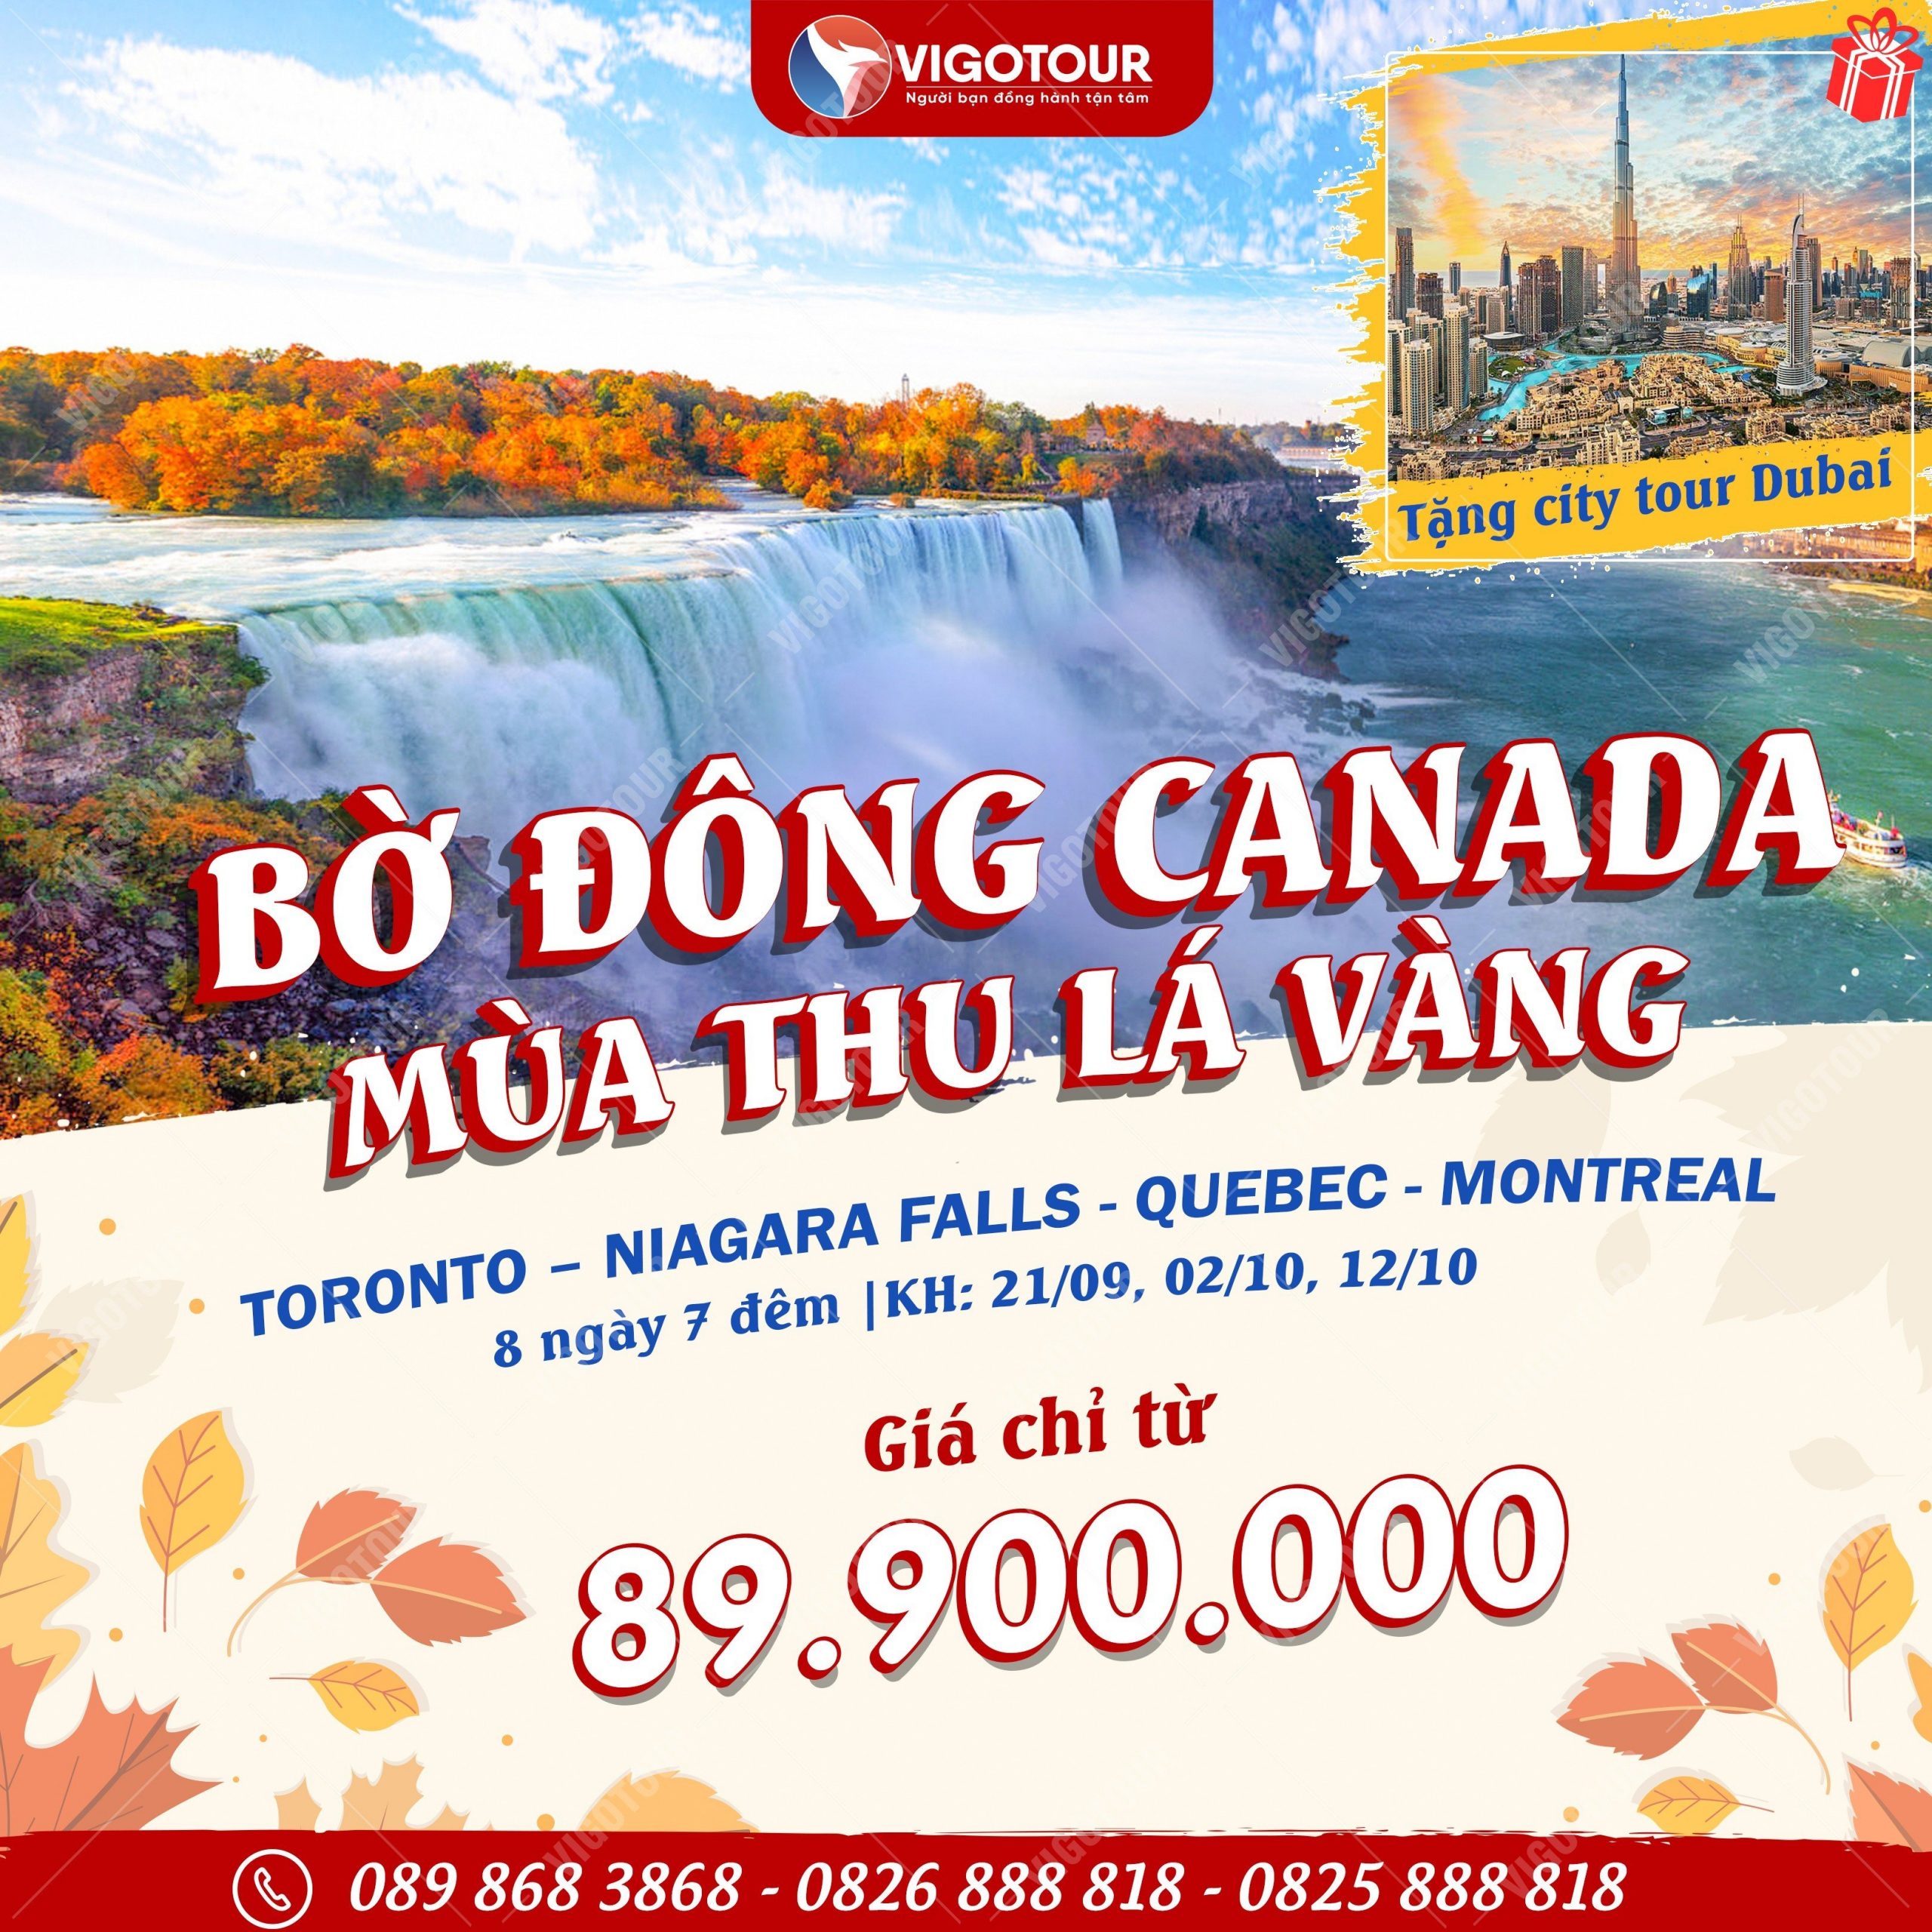 Canada là đất nước xinh đẹp nổi tiếng với nhiều cảnh quan tự nhiên, lễ hội hấp dẫn Z4467069641102-4cc1c9442ad8e145e0363d466ecfe7ad-scaled